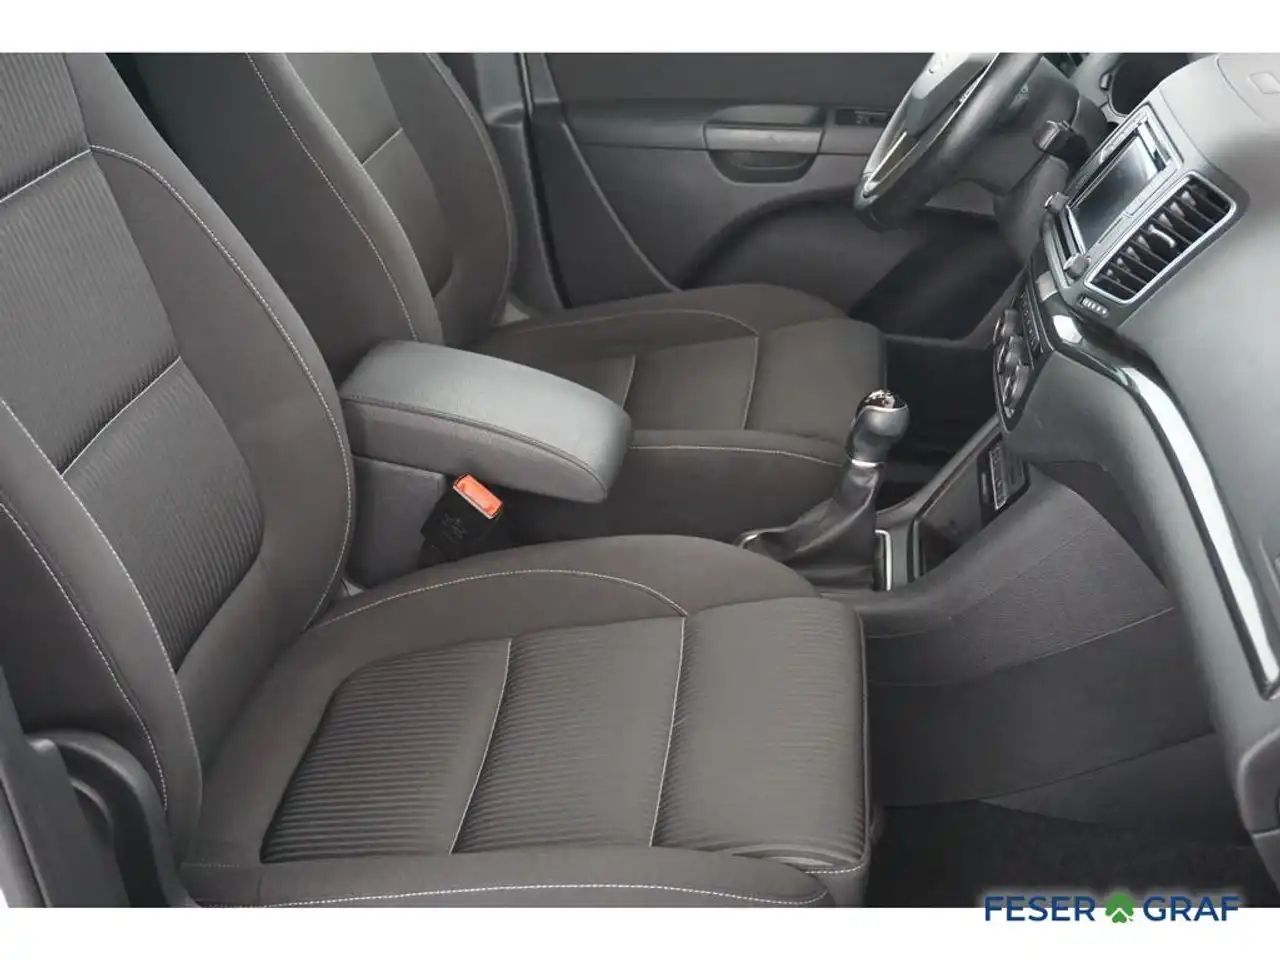 SEAT ALHAMBRA Gebraucht, Diesel, Schaltgetriebe, FzN: VM-237213 🍀  Feser-Graf Fahrzeugsuche